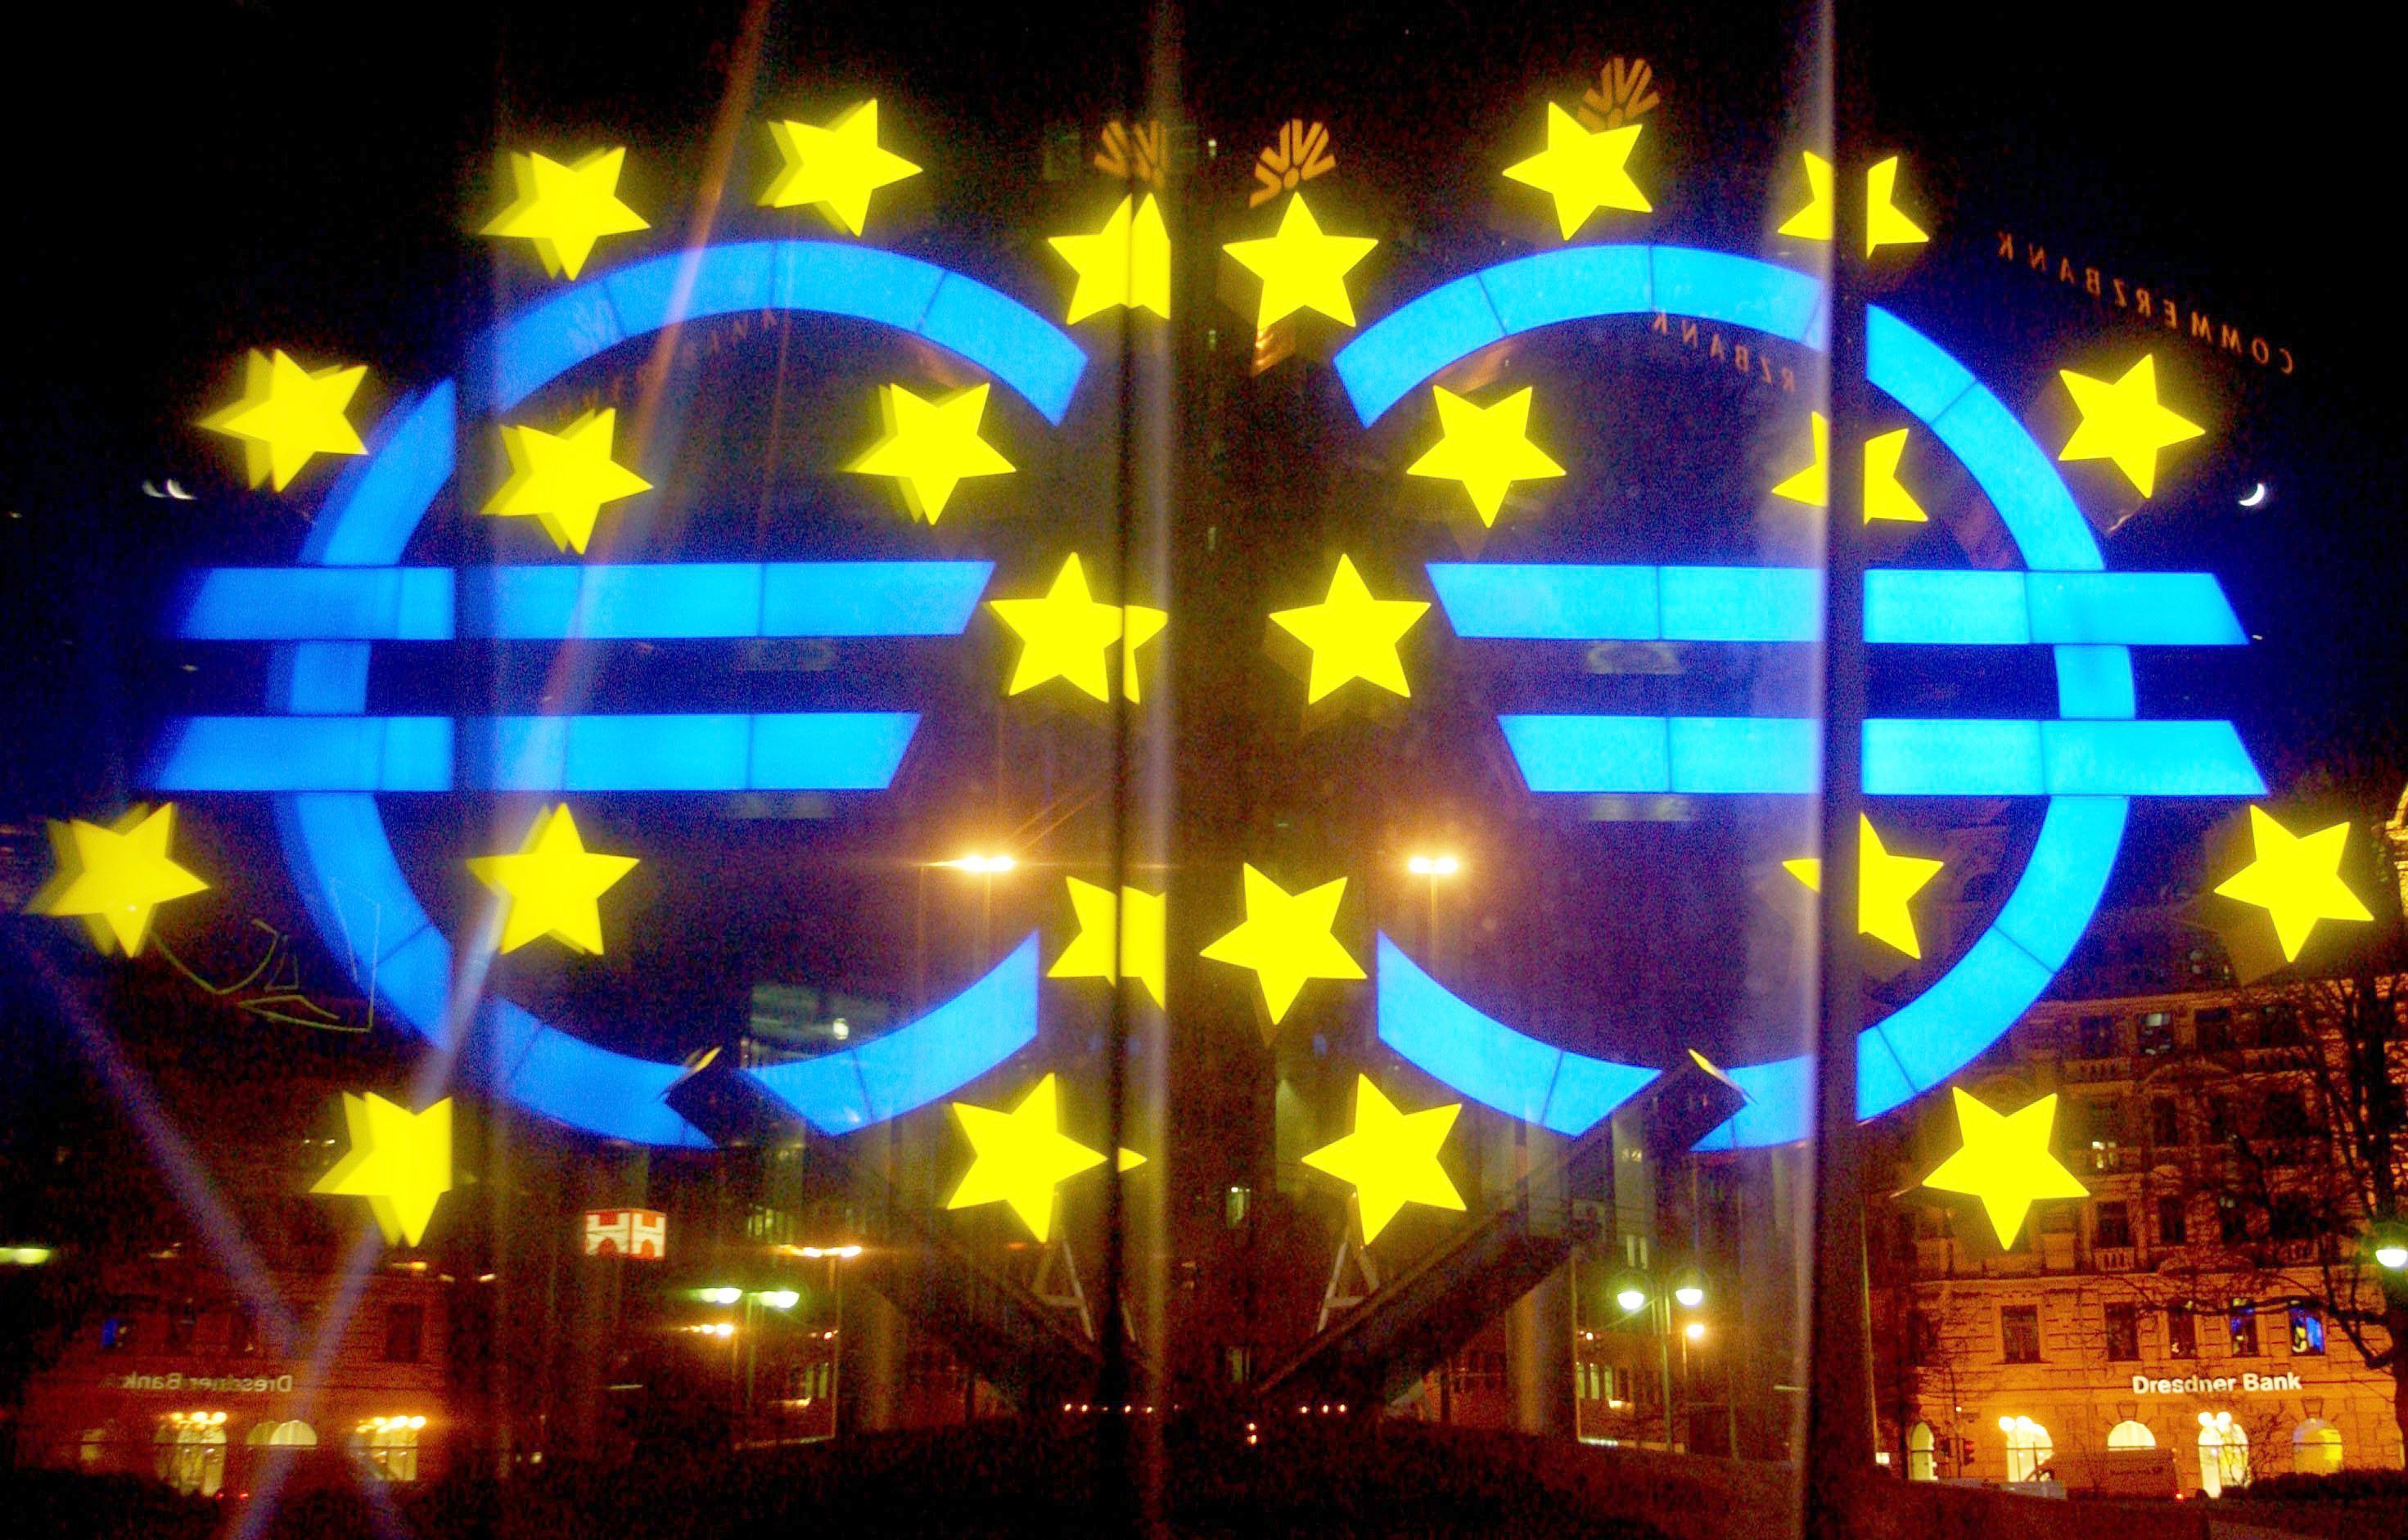 Inflação sobe em maio na zona euro e UE, indica Eurostat